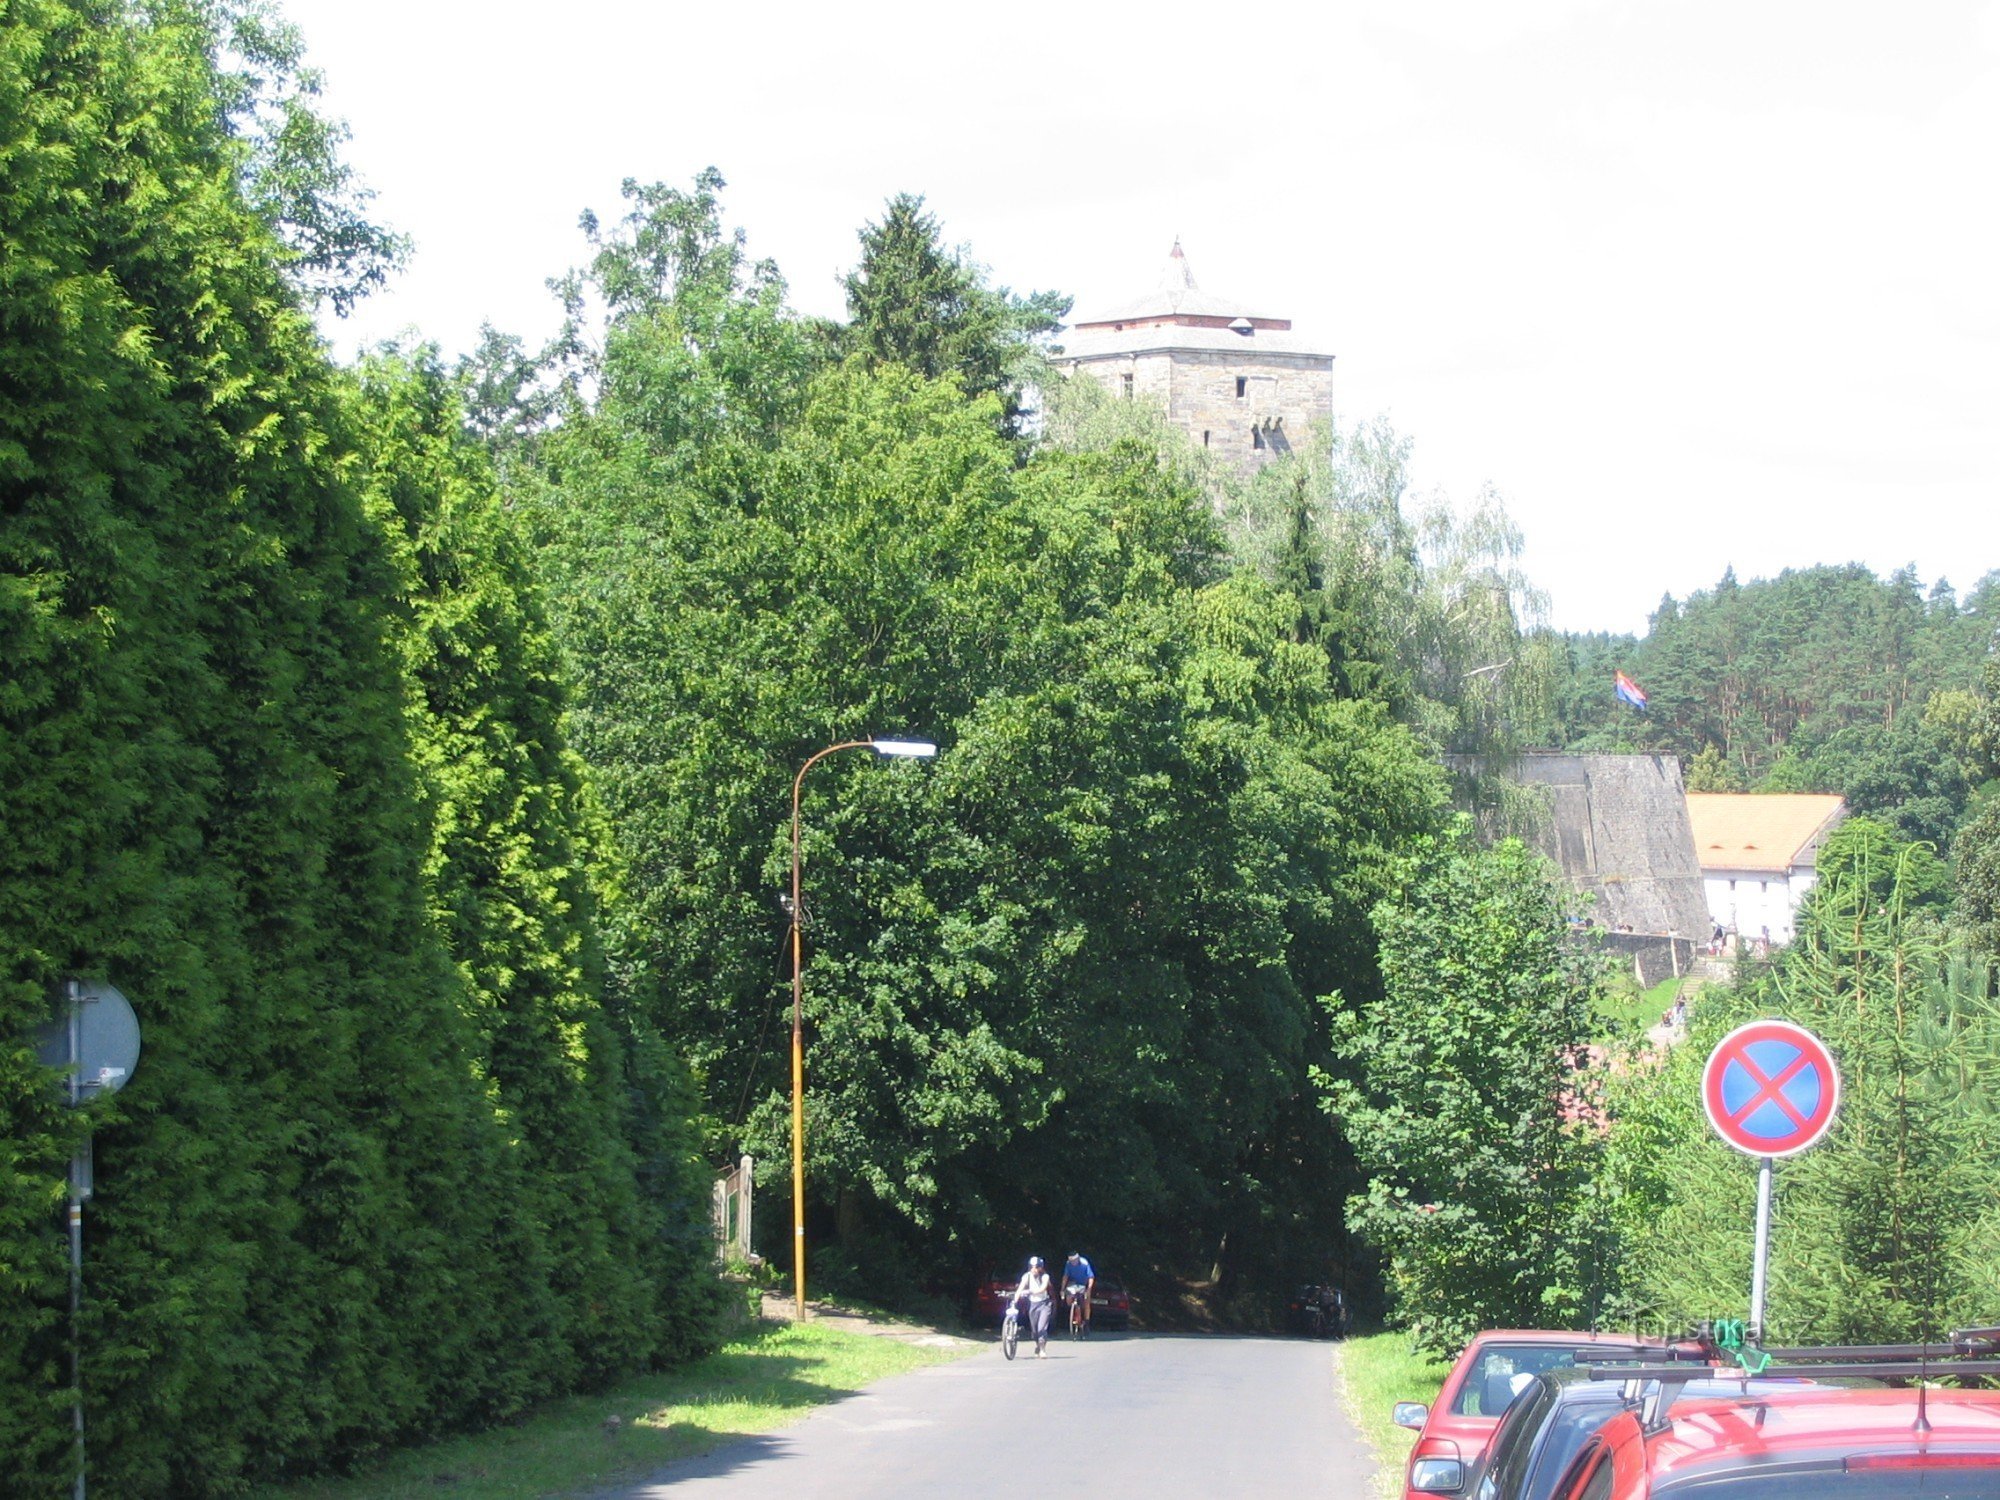 Kost es el primer castillo al que llegamos desde la colina.